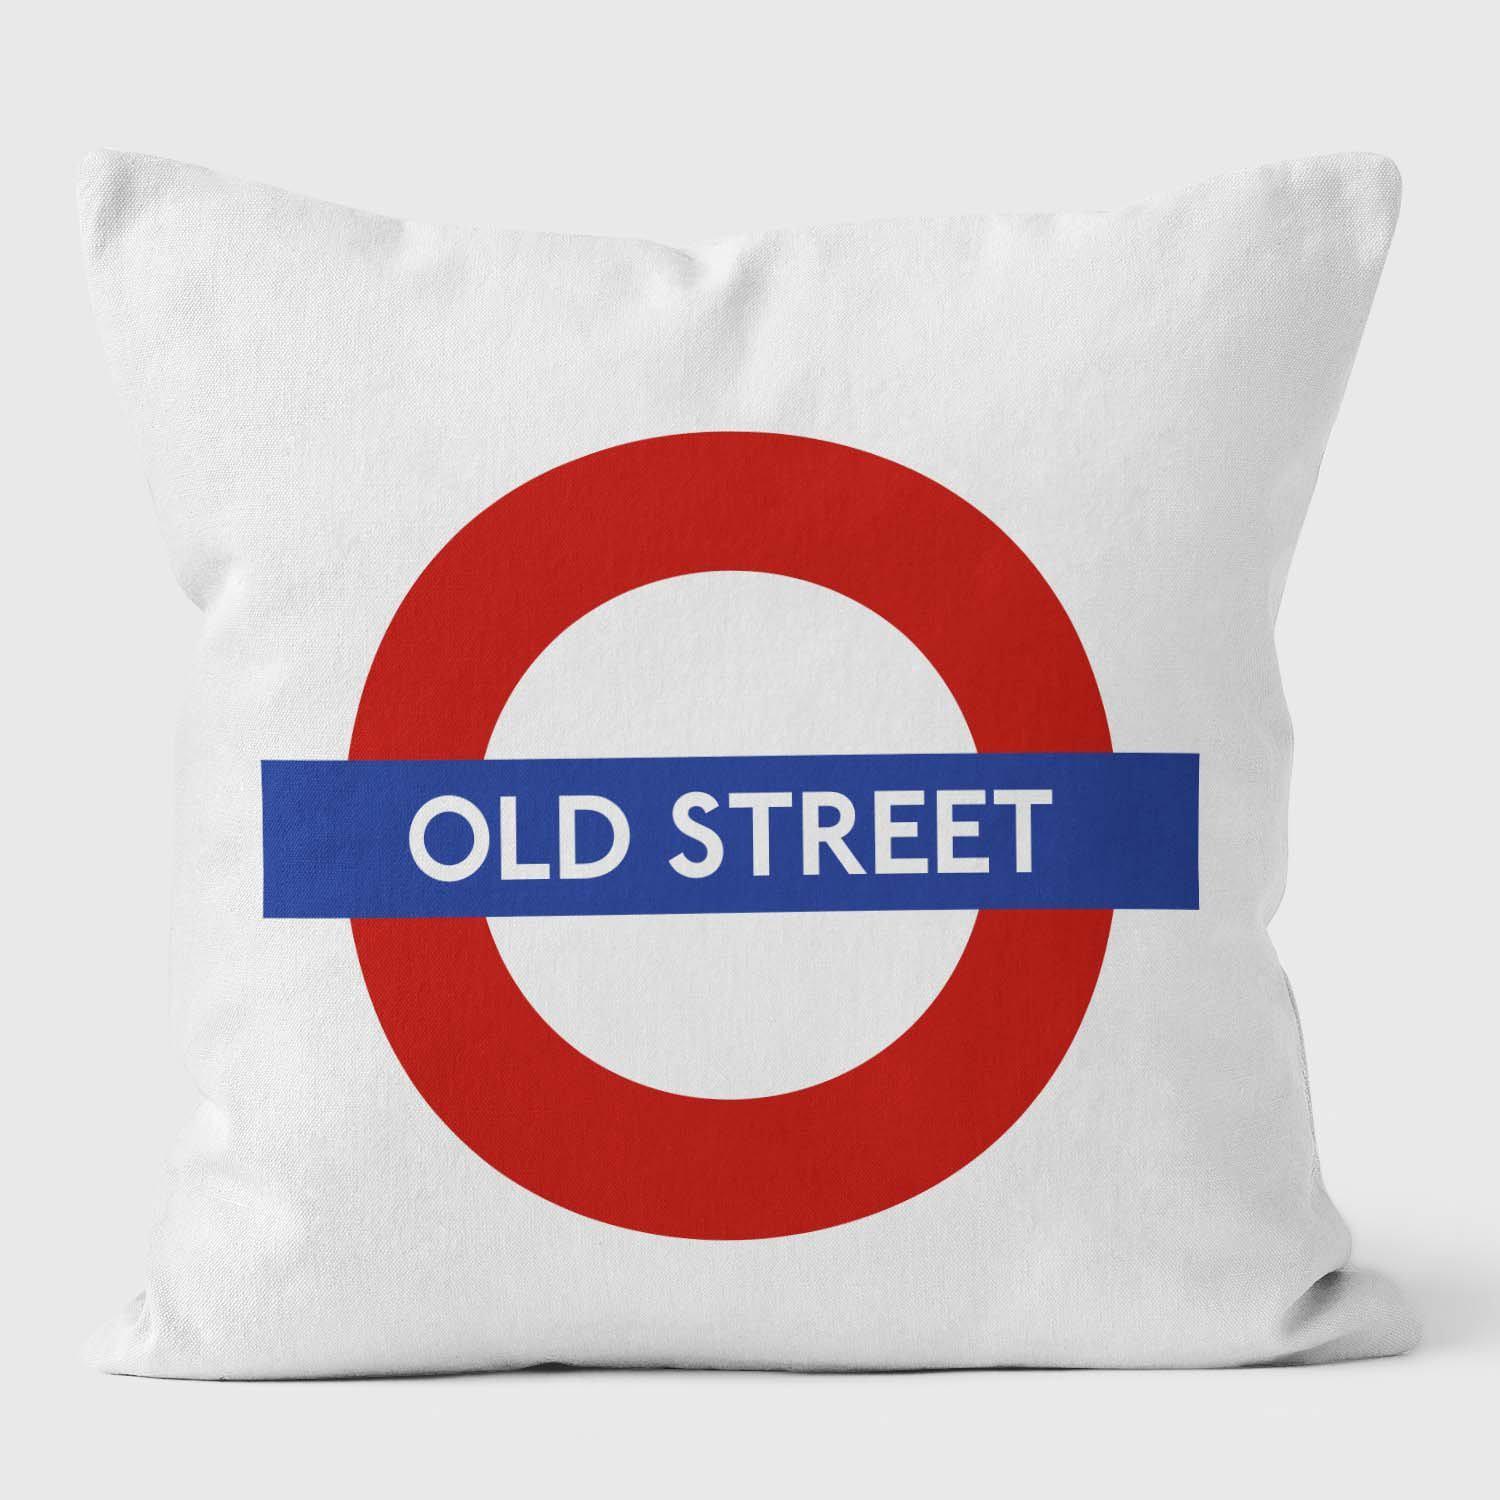 Old Street London Underground Tube Station Roundel Cushion - Handmade Cushions UK - WeLoveCushions